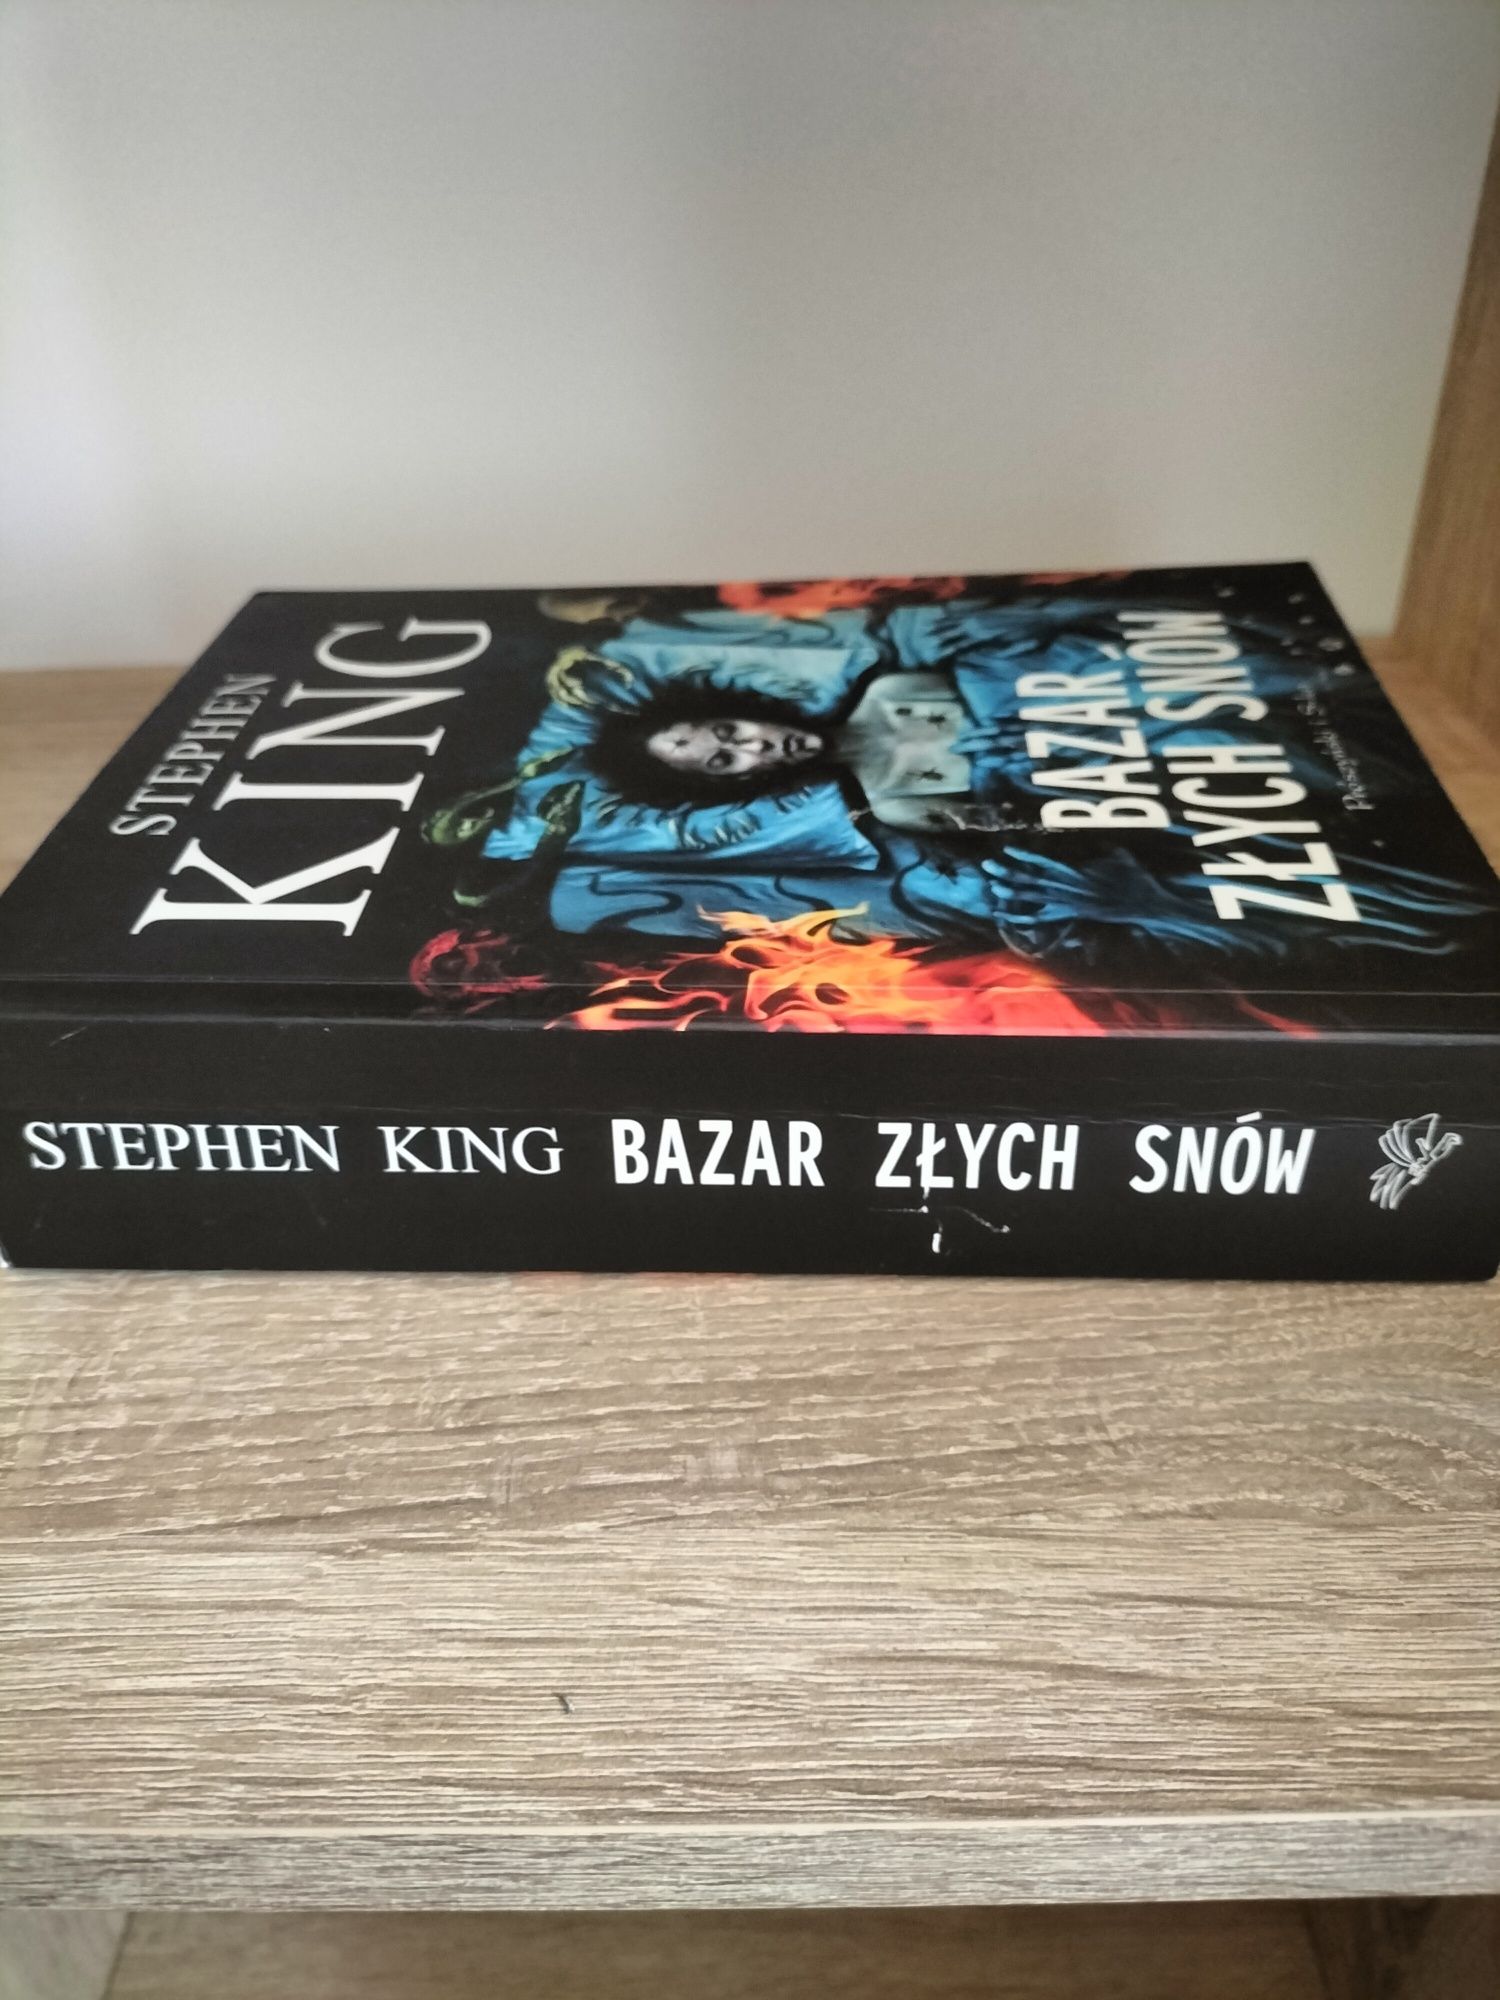 Stephen King Bazar złych snów